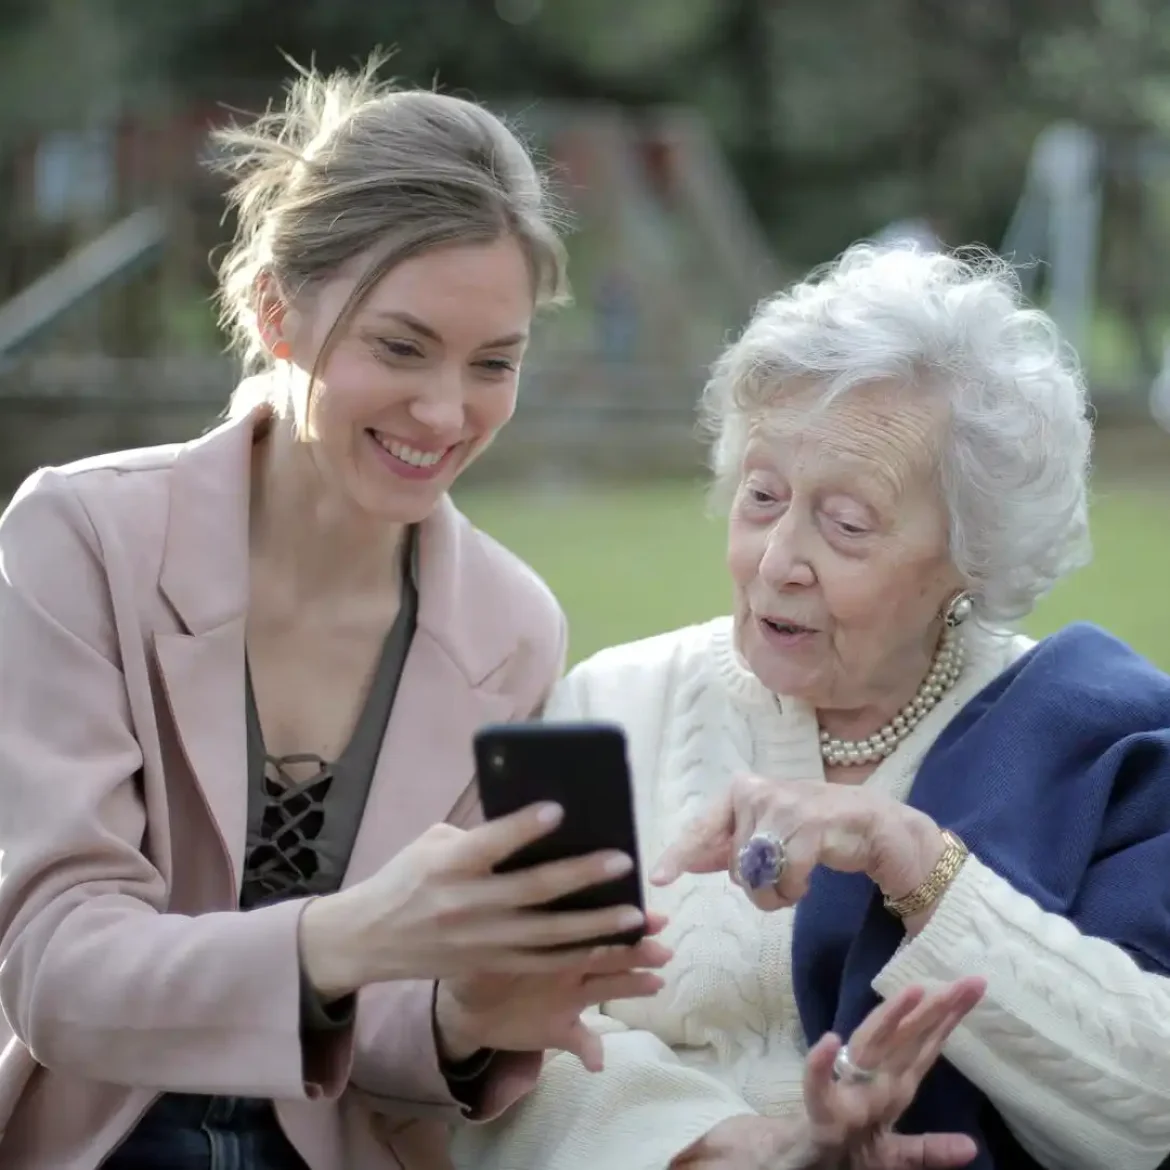 Een vrouw zit samen met een oudere vrouw op een bankje | Ter illustratie van mantelzorger